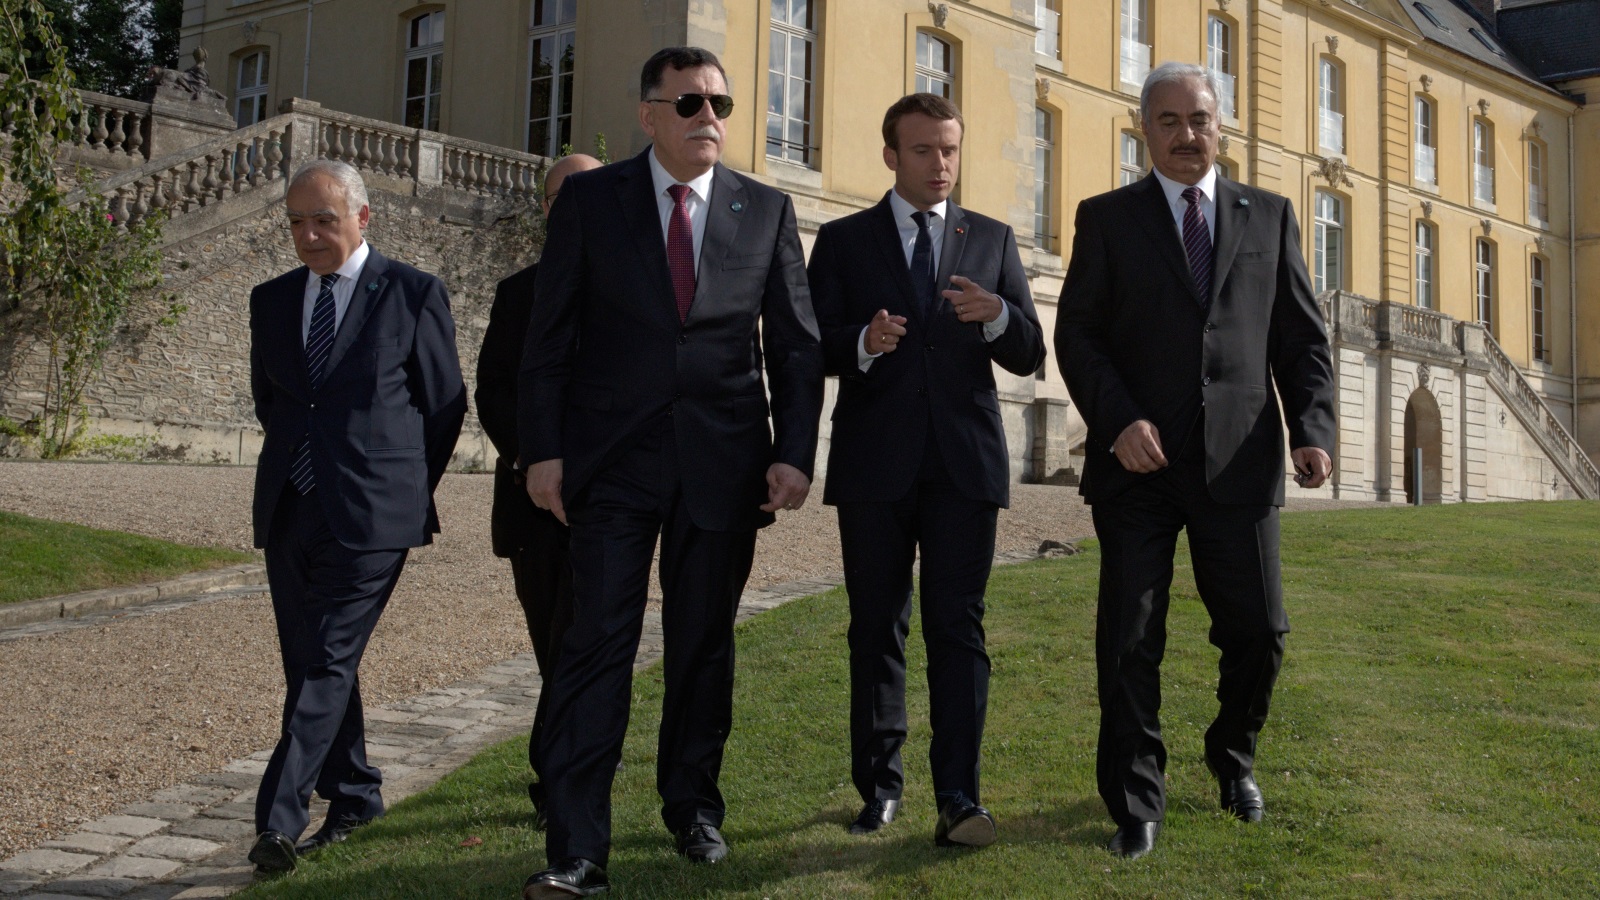  الرئيس الفرنسي ماكرون مع حفتر والسراج والمبعوث الأممي الجديد غسان سلامة ( يسار) (رويترز)